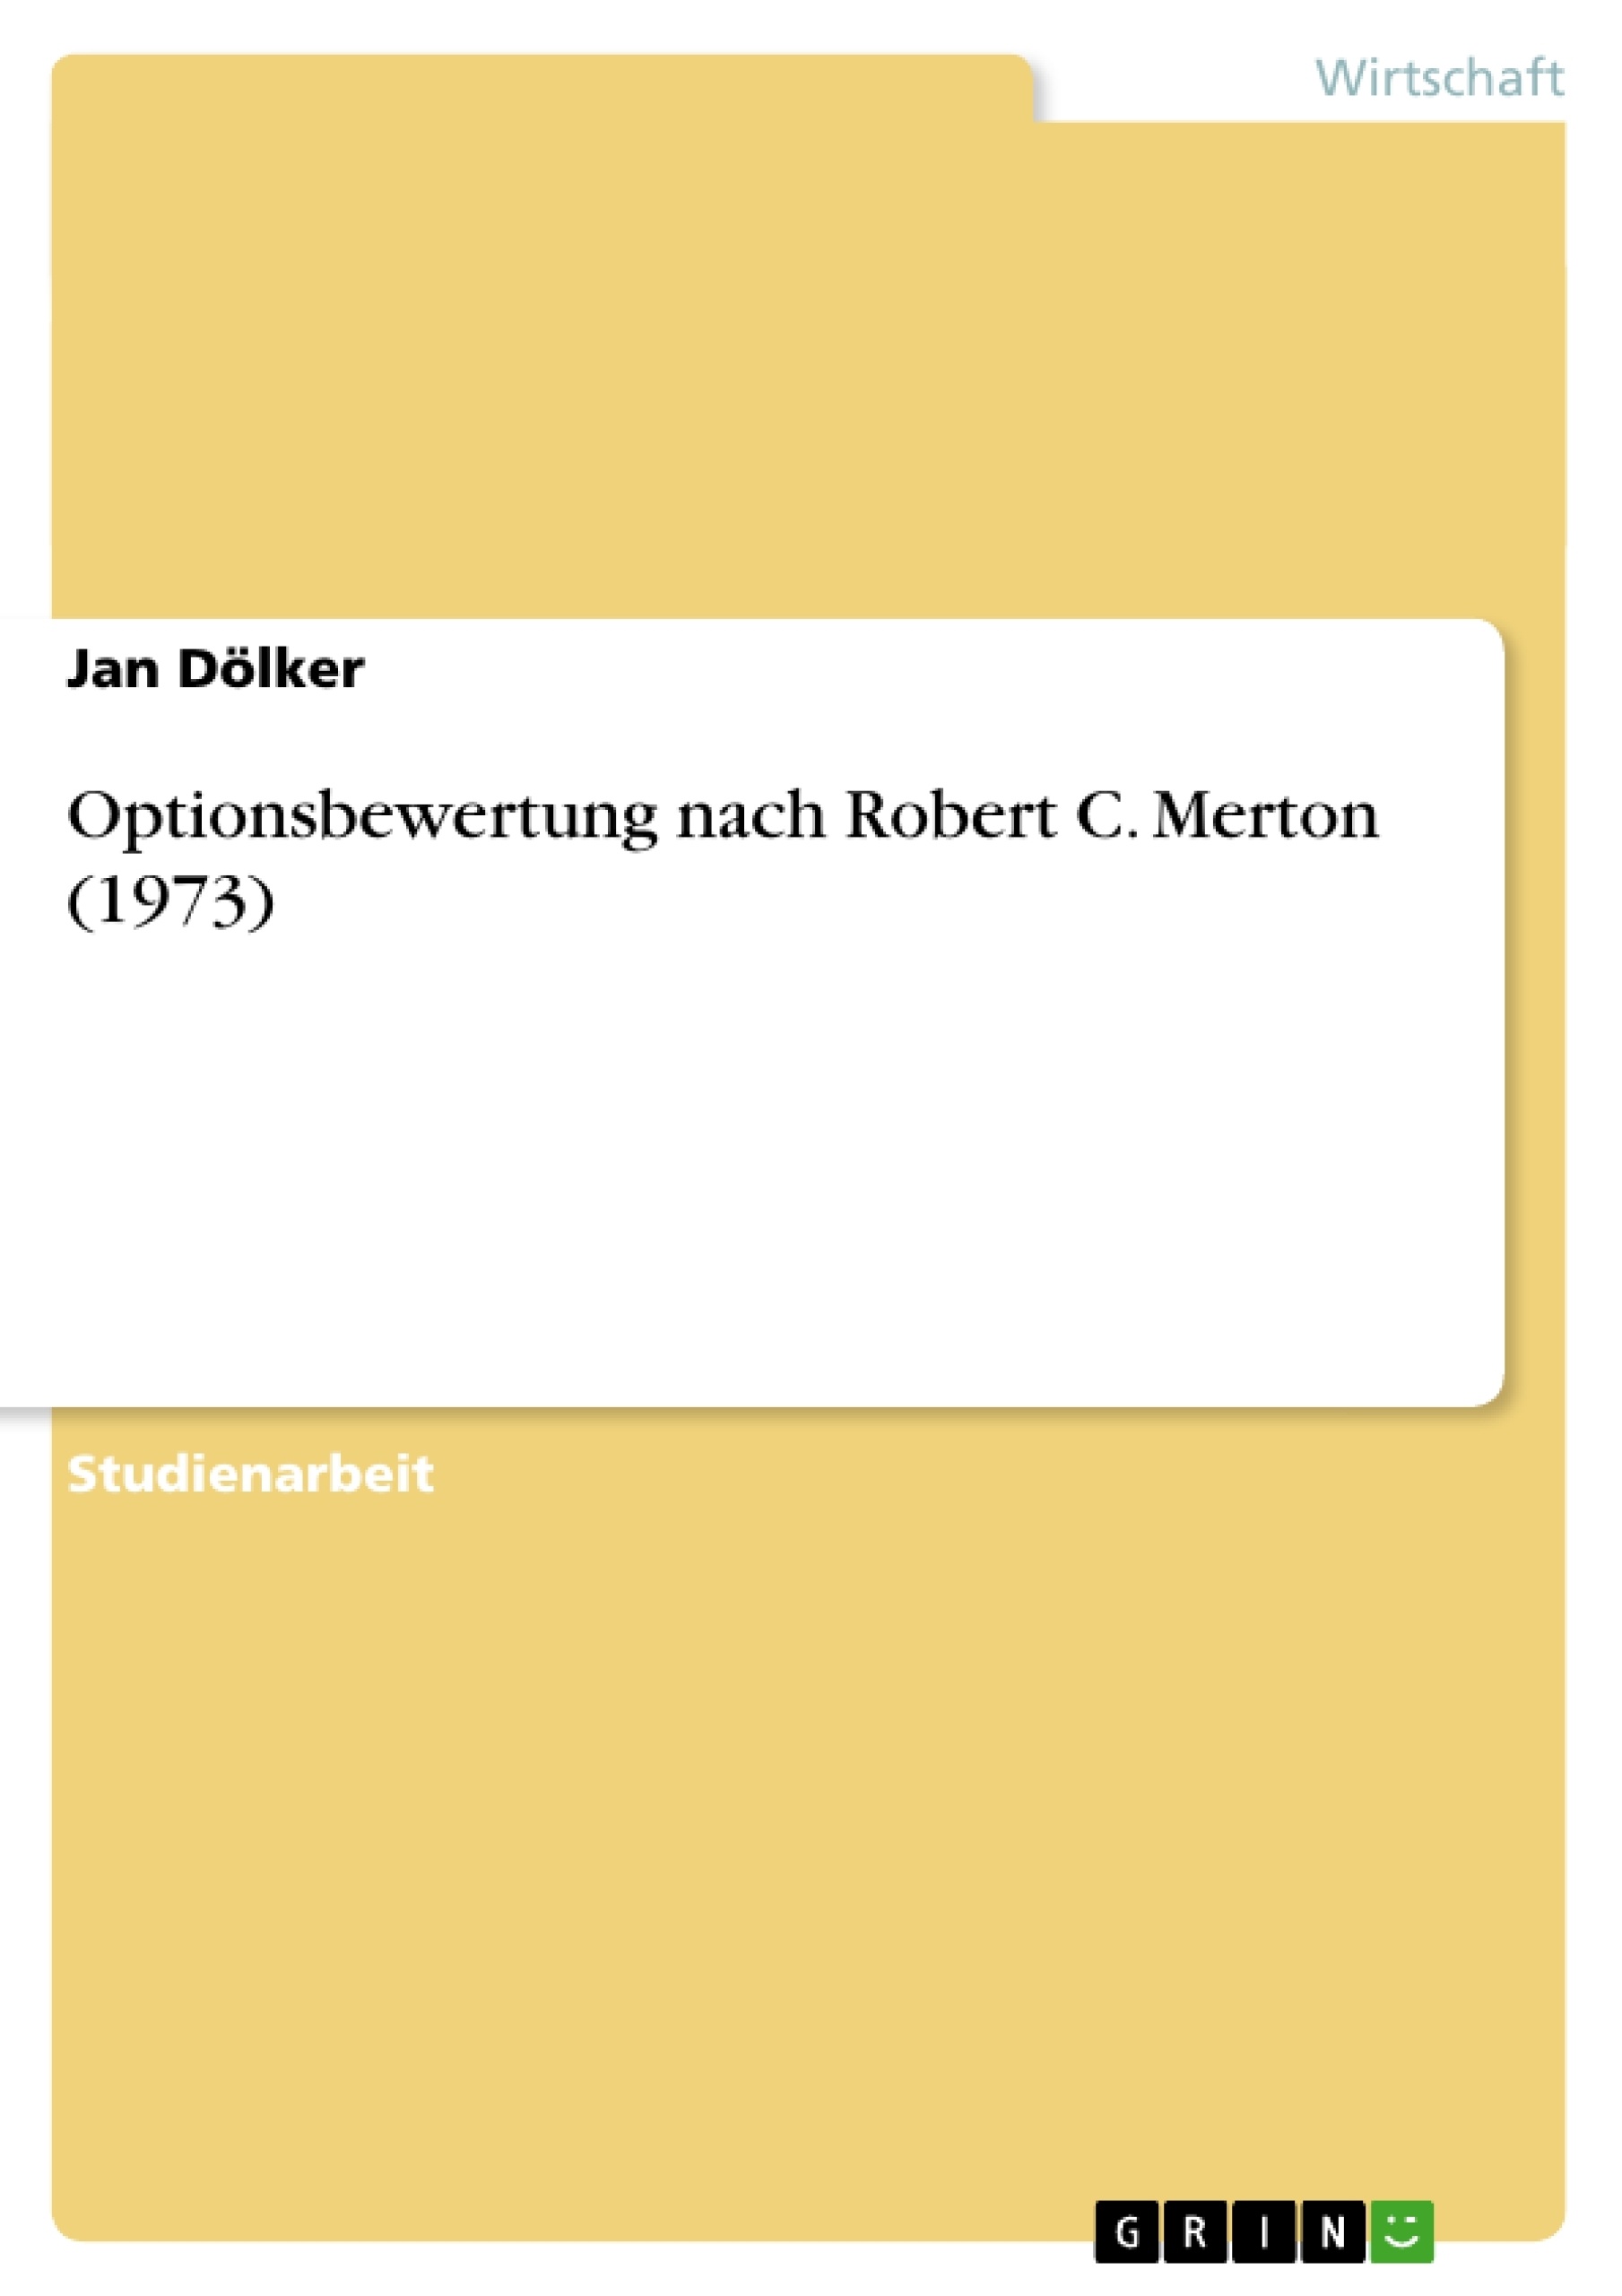 Title: Optionsbewertung nach Robert C. Merton (1973)